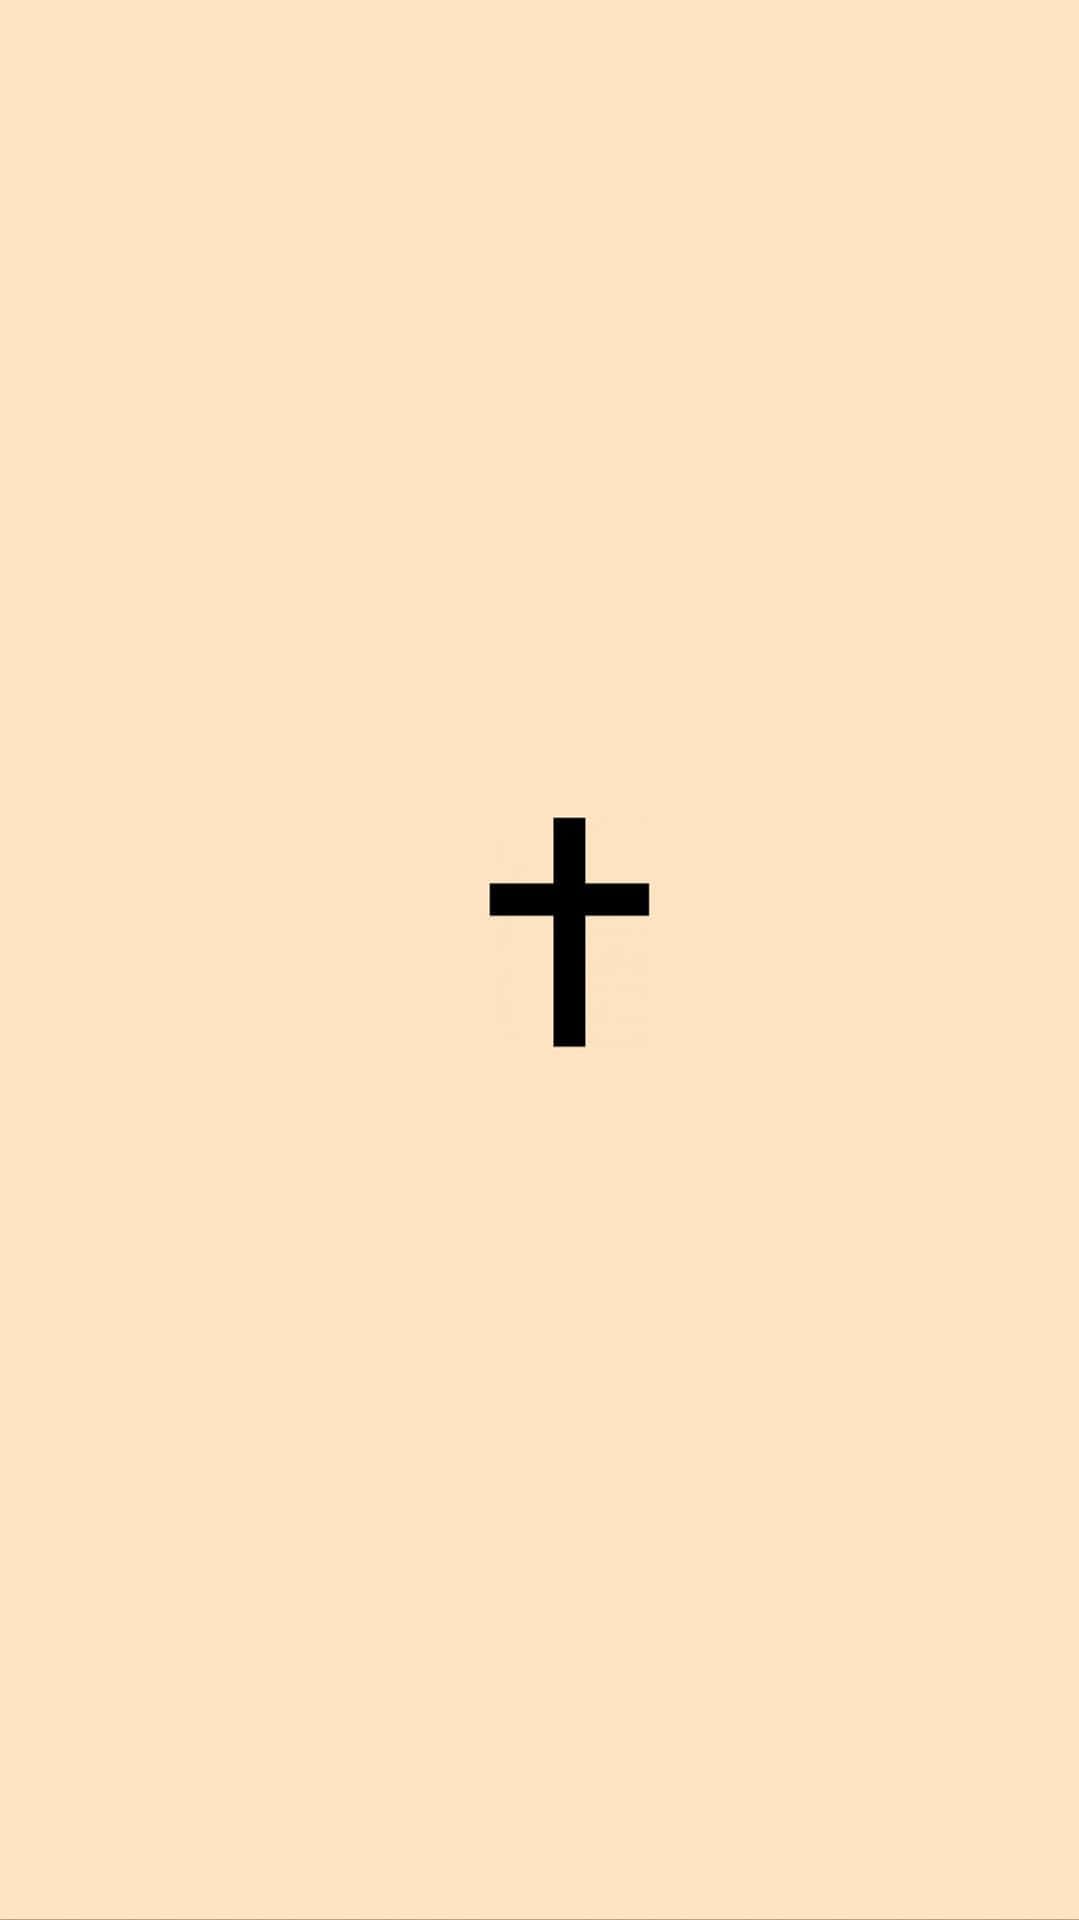 A Black Cross On A Beige Background Wallpaper